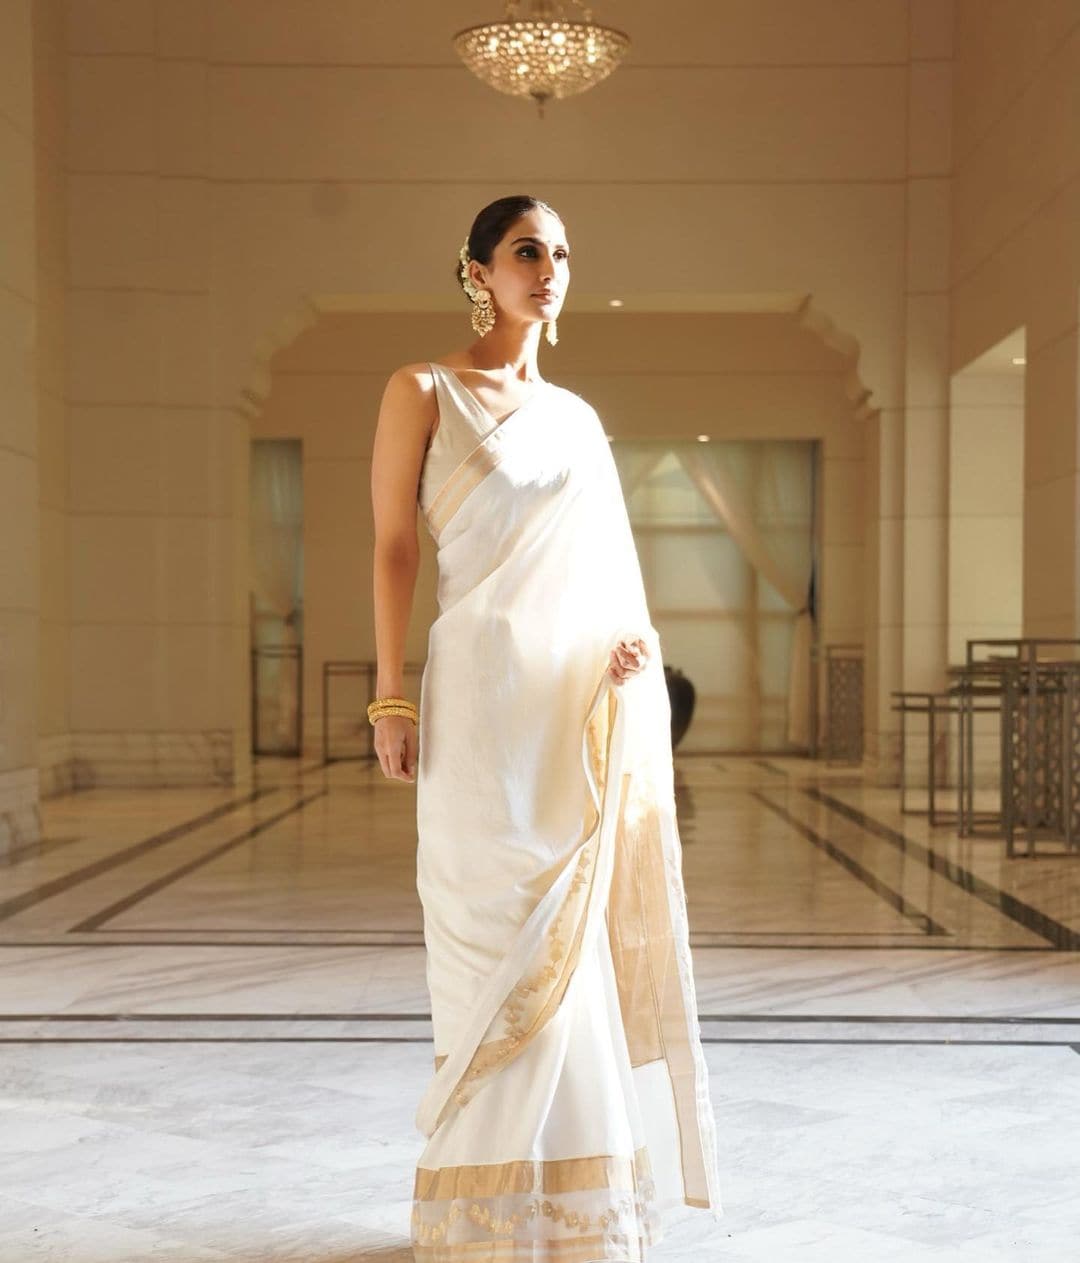 Vaani Kapoor looks graceful in the white saree